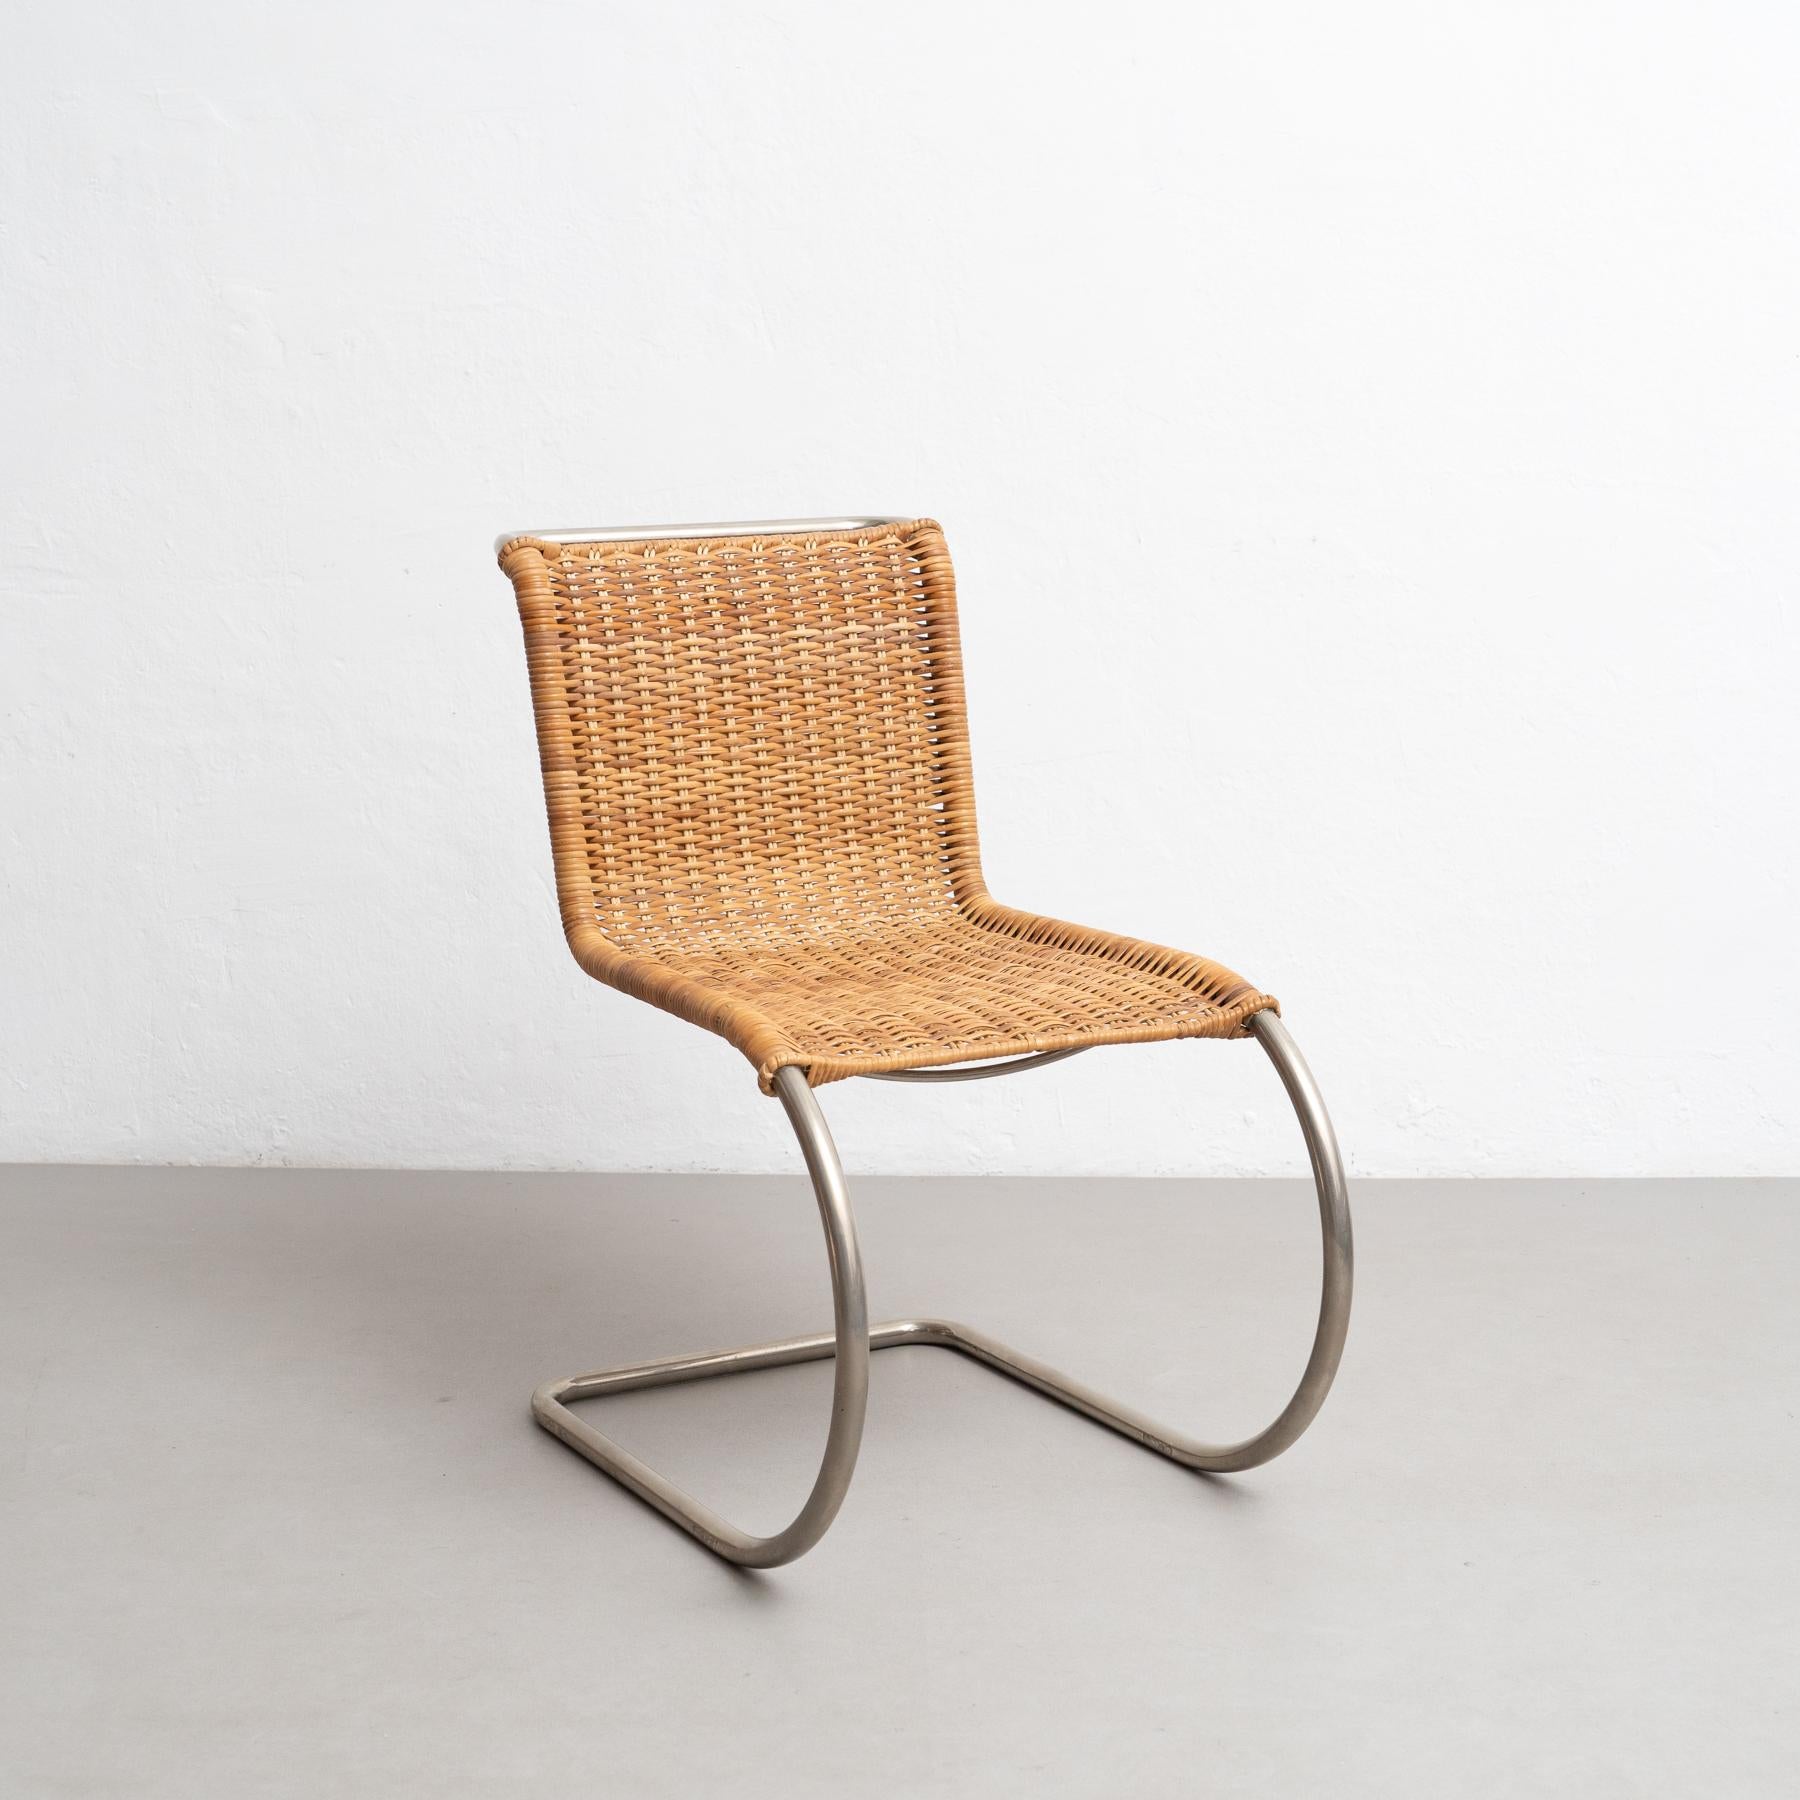 Der 1927 von Ludwig Mies van der Rohe entworfene Stuhl MR10 ist ein wahres Meisterwerk des modernen Designs. Diese um 1960 von Tecta in Deutschland hergestellten Stühle sind ein Beweis für die anhaltende Beliebtheit der innovativen und zeitlosen